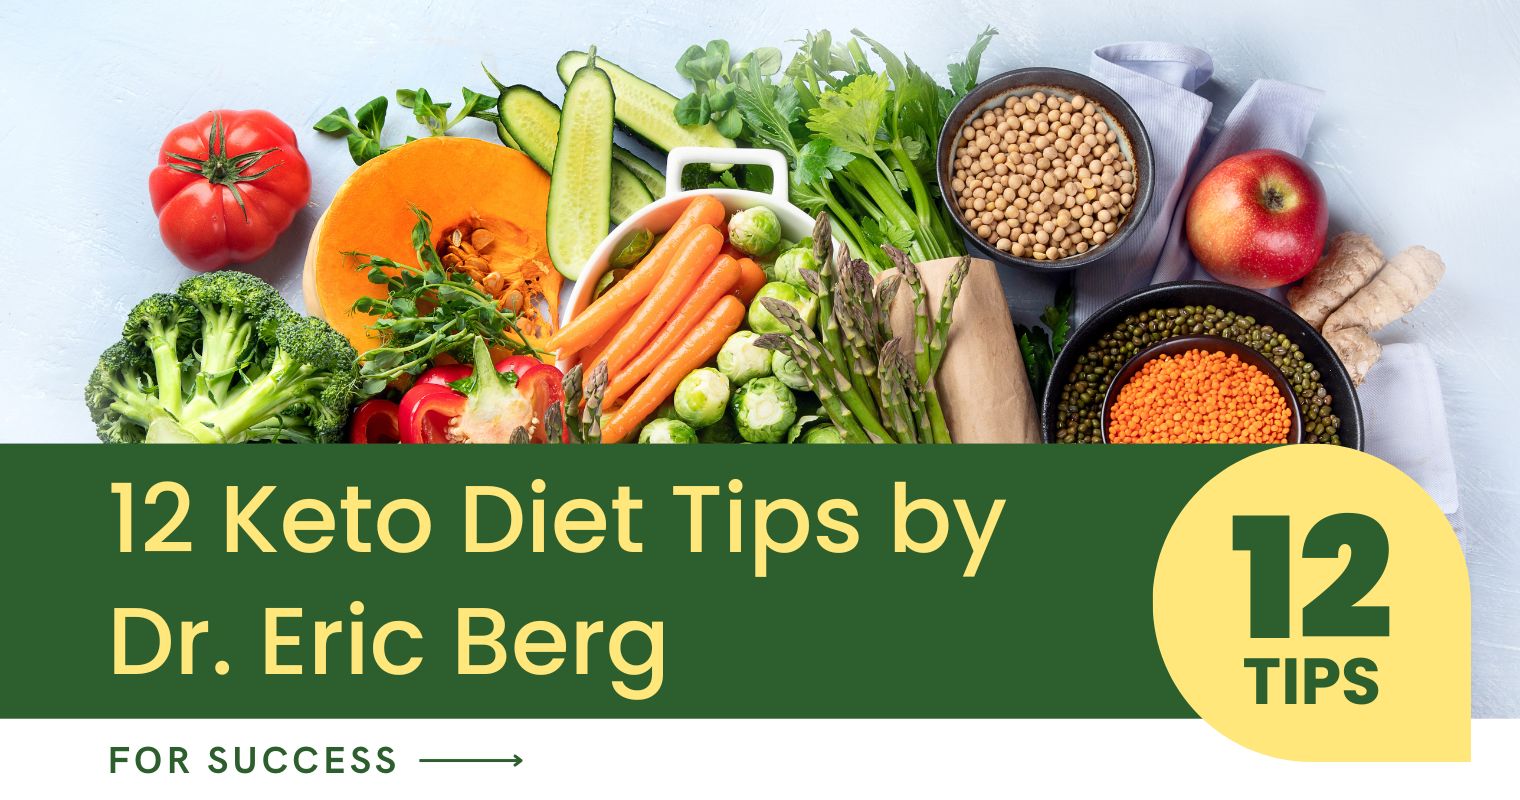 Dr. Eric Berg keto diet tips